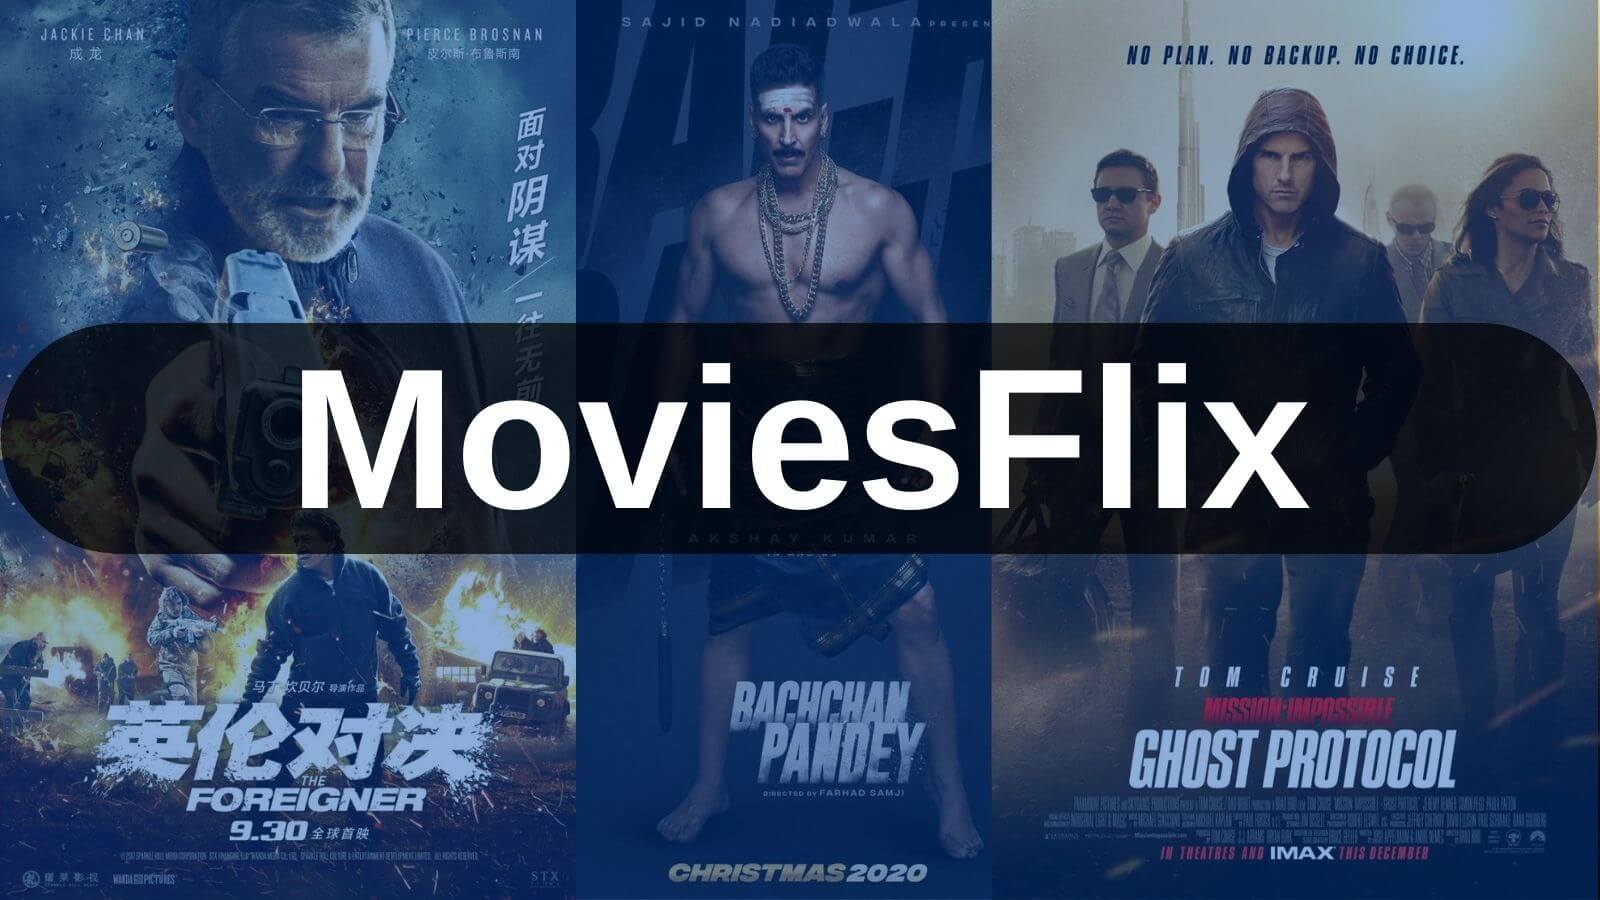 MoviesFlix